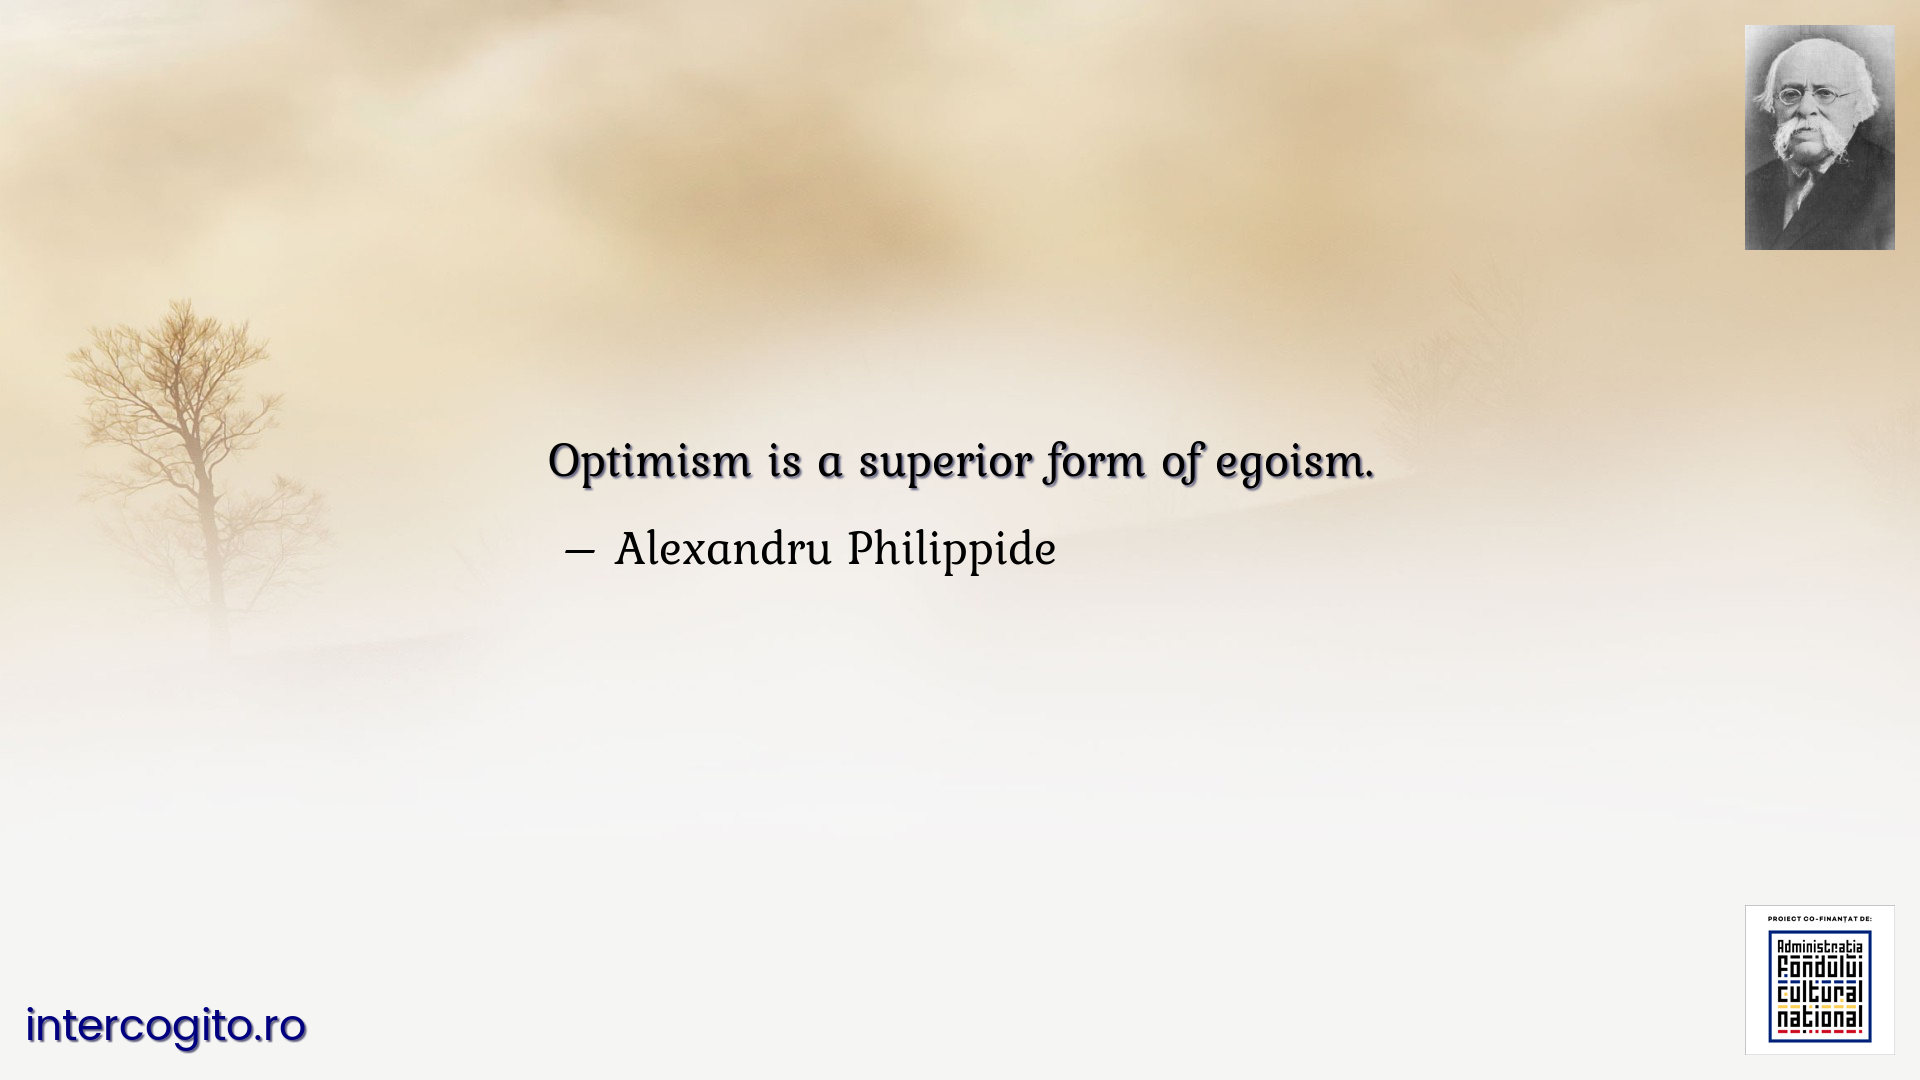 Optimism is a superior form of egoism.